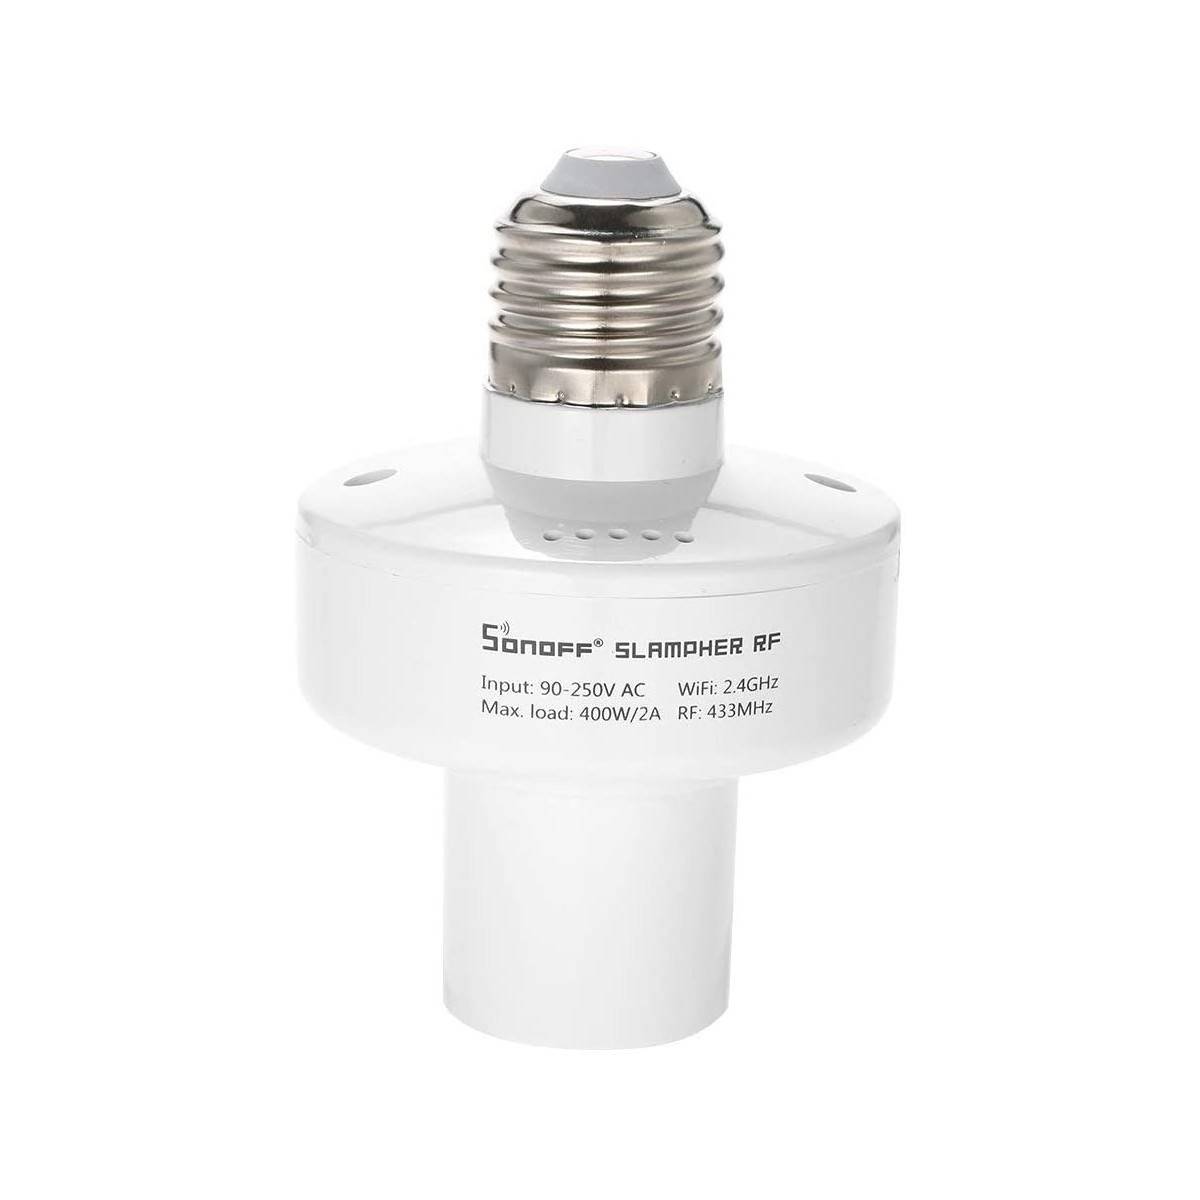 E27 WiFi Smart Lampenhalterung Adapter | SONOFF SLAMPHER